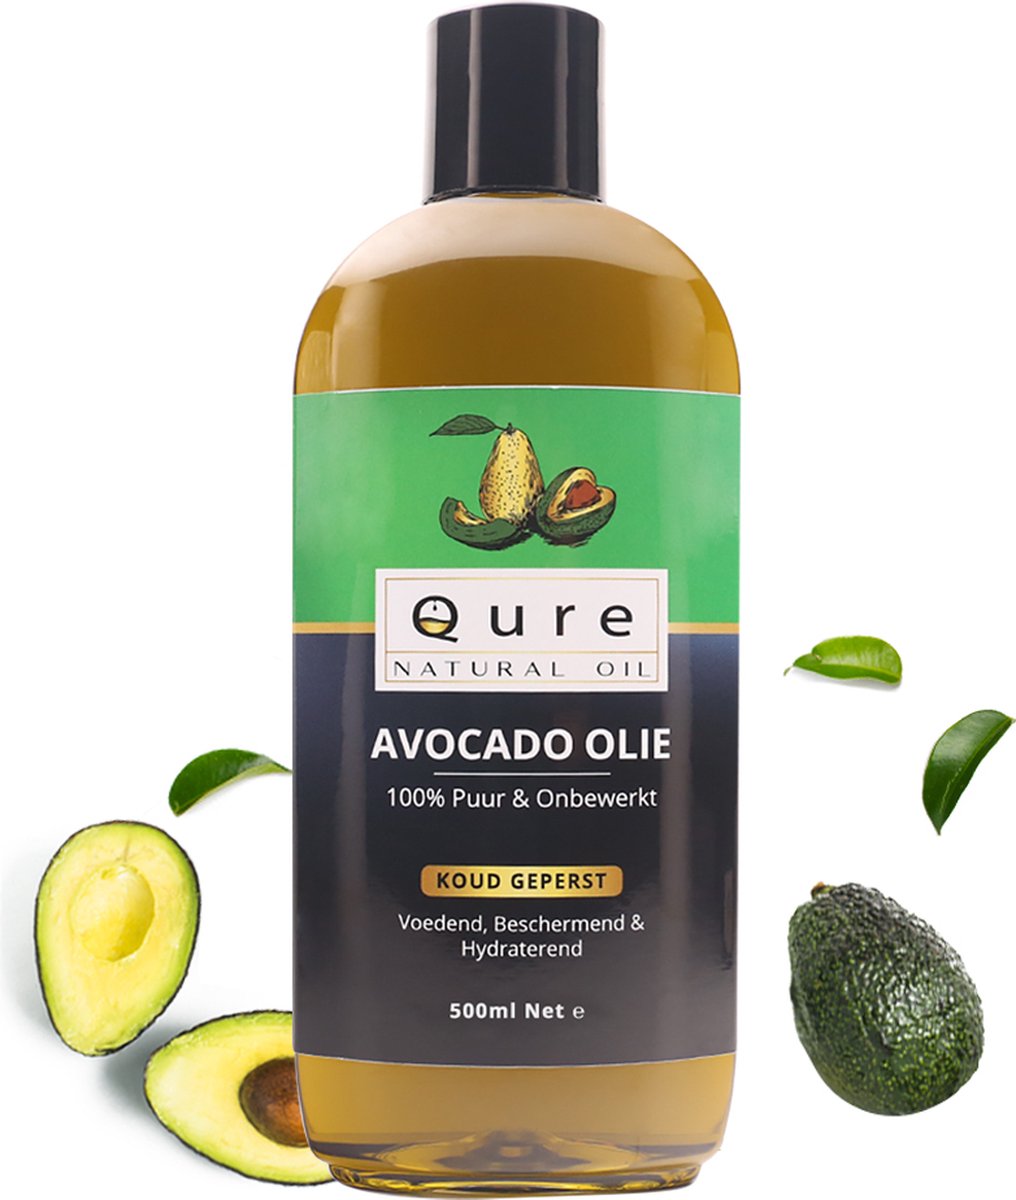 Avocado Olie 500ml | 100% Puur & Onbewerkt | Foodgrade Koudgeperst en niet geraffineerde Avocado Olie voor Haar, Huid en Lichaam